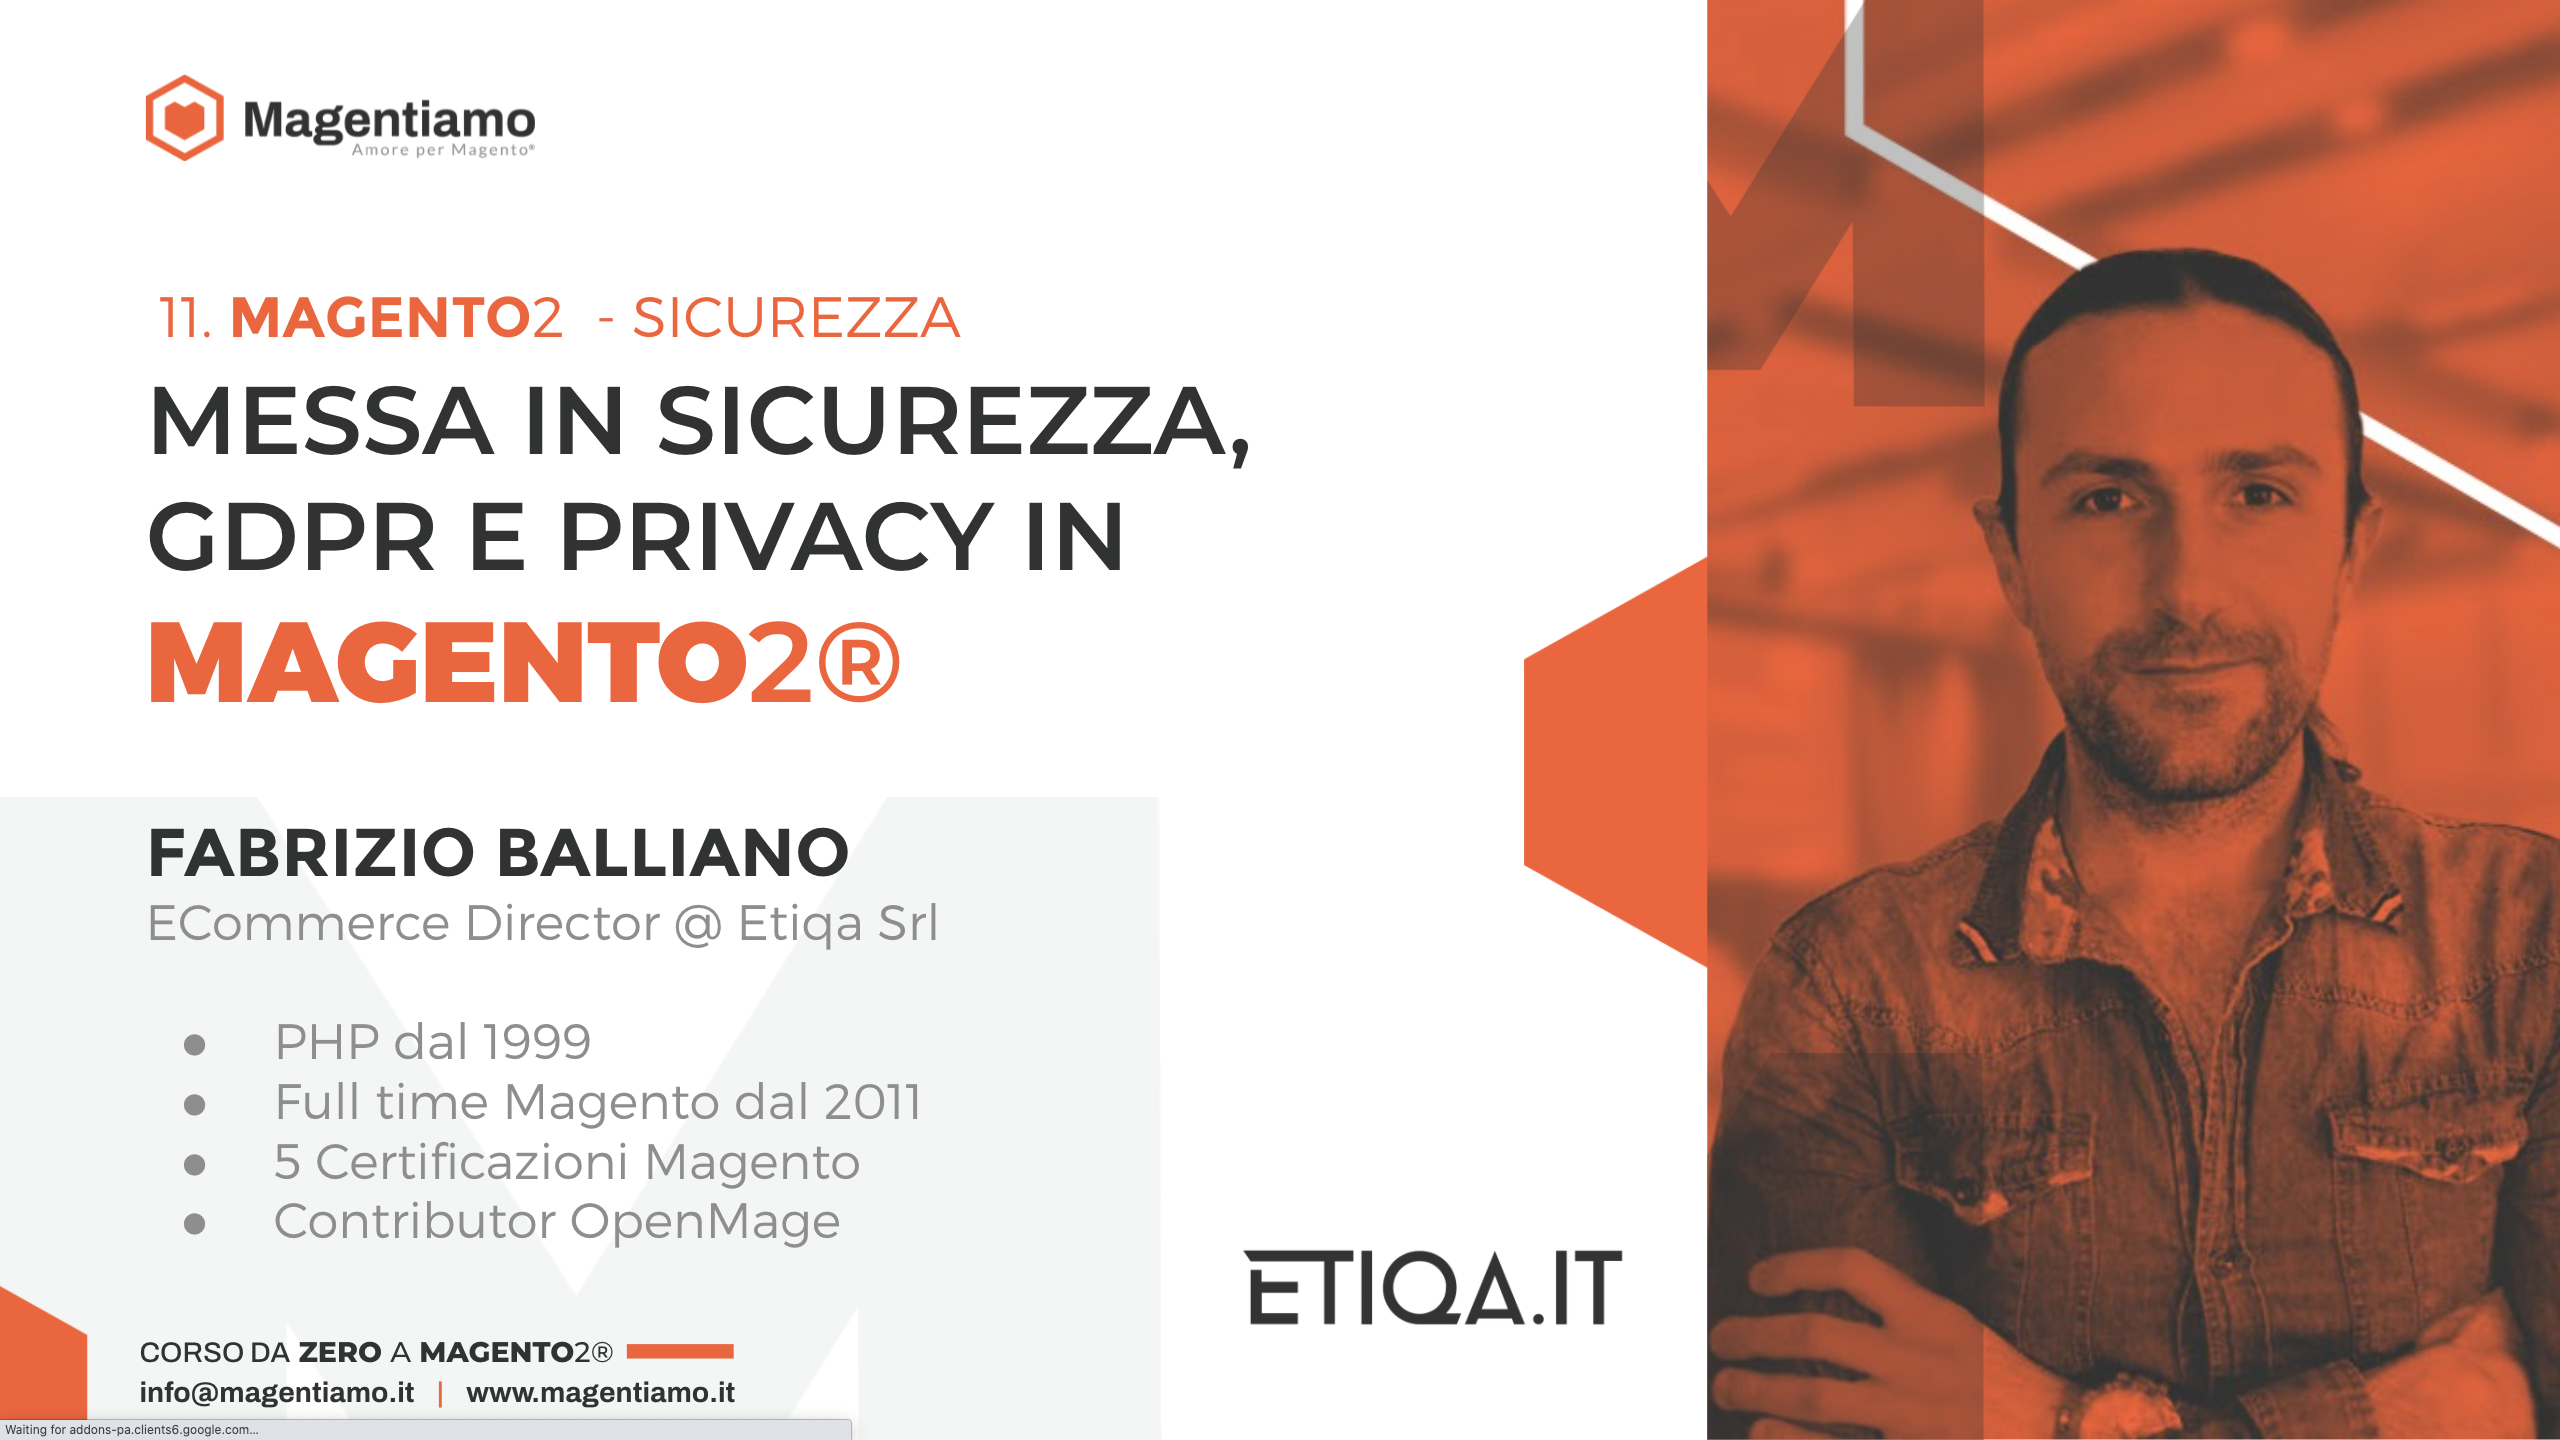 11. SICUREZZA - Messa in sicurezza, GDPR e privacy in Magento2 - Fabrizio Balliano